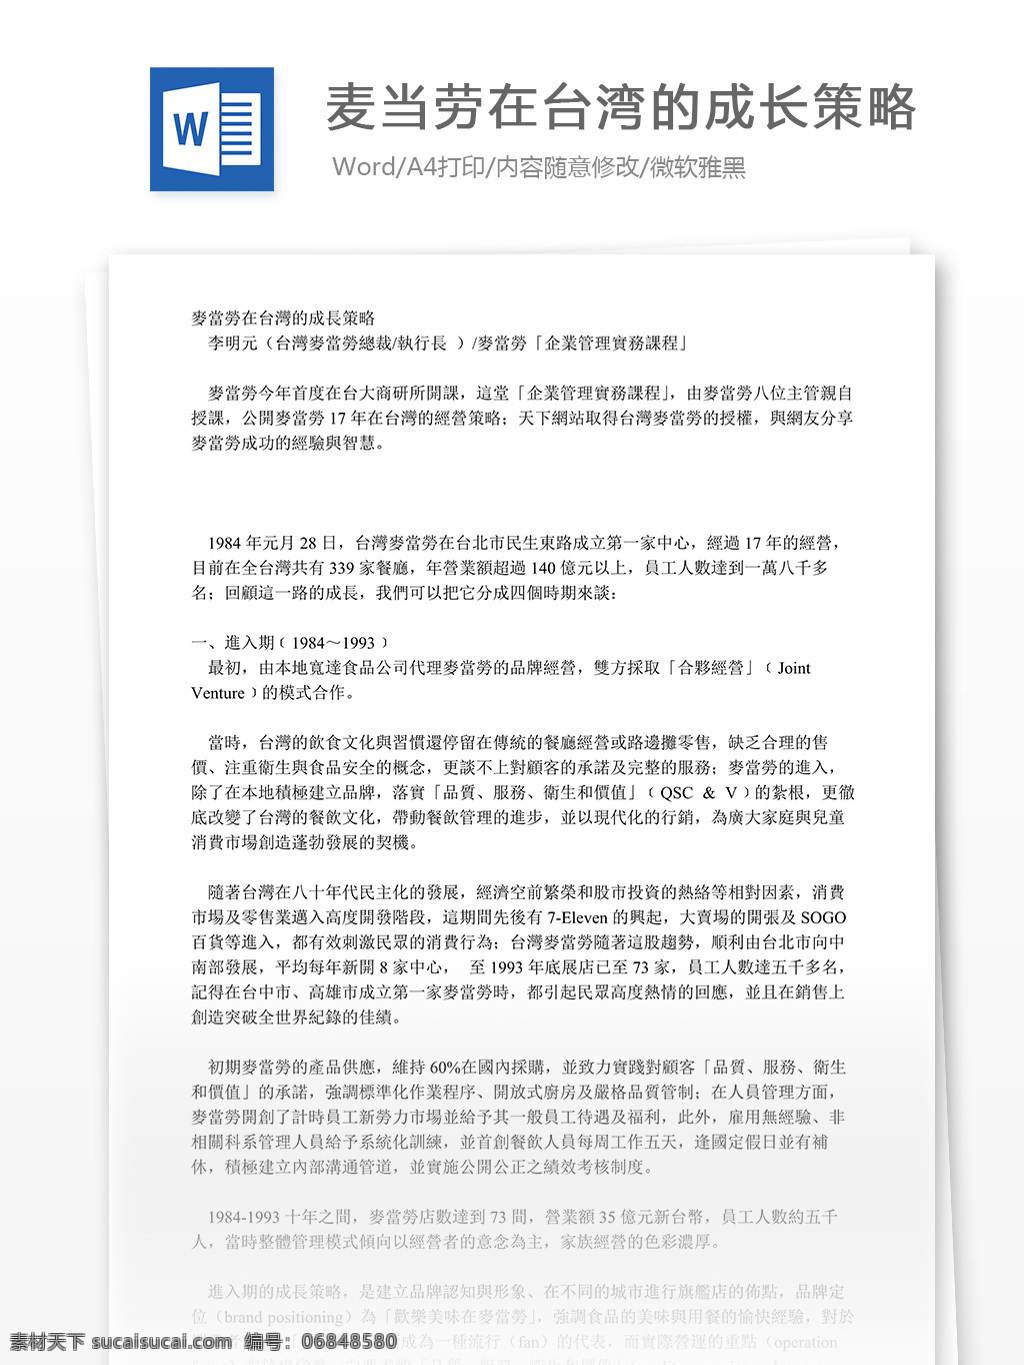 麦当劳 台湾 成长 策略 word 文档 模版 文档模板 广告 文案 策划 广告策划 报告 广告方案 广告宣传